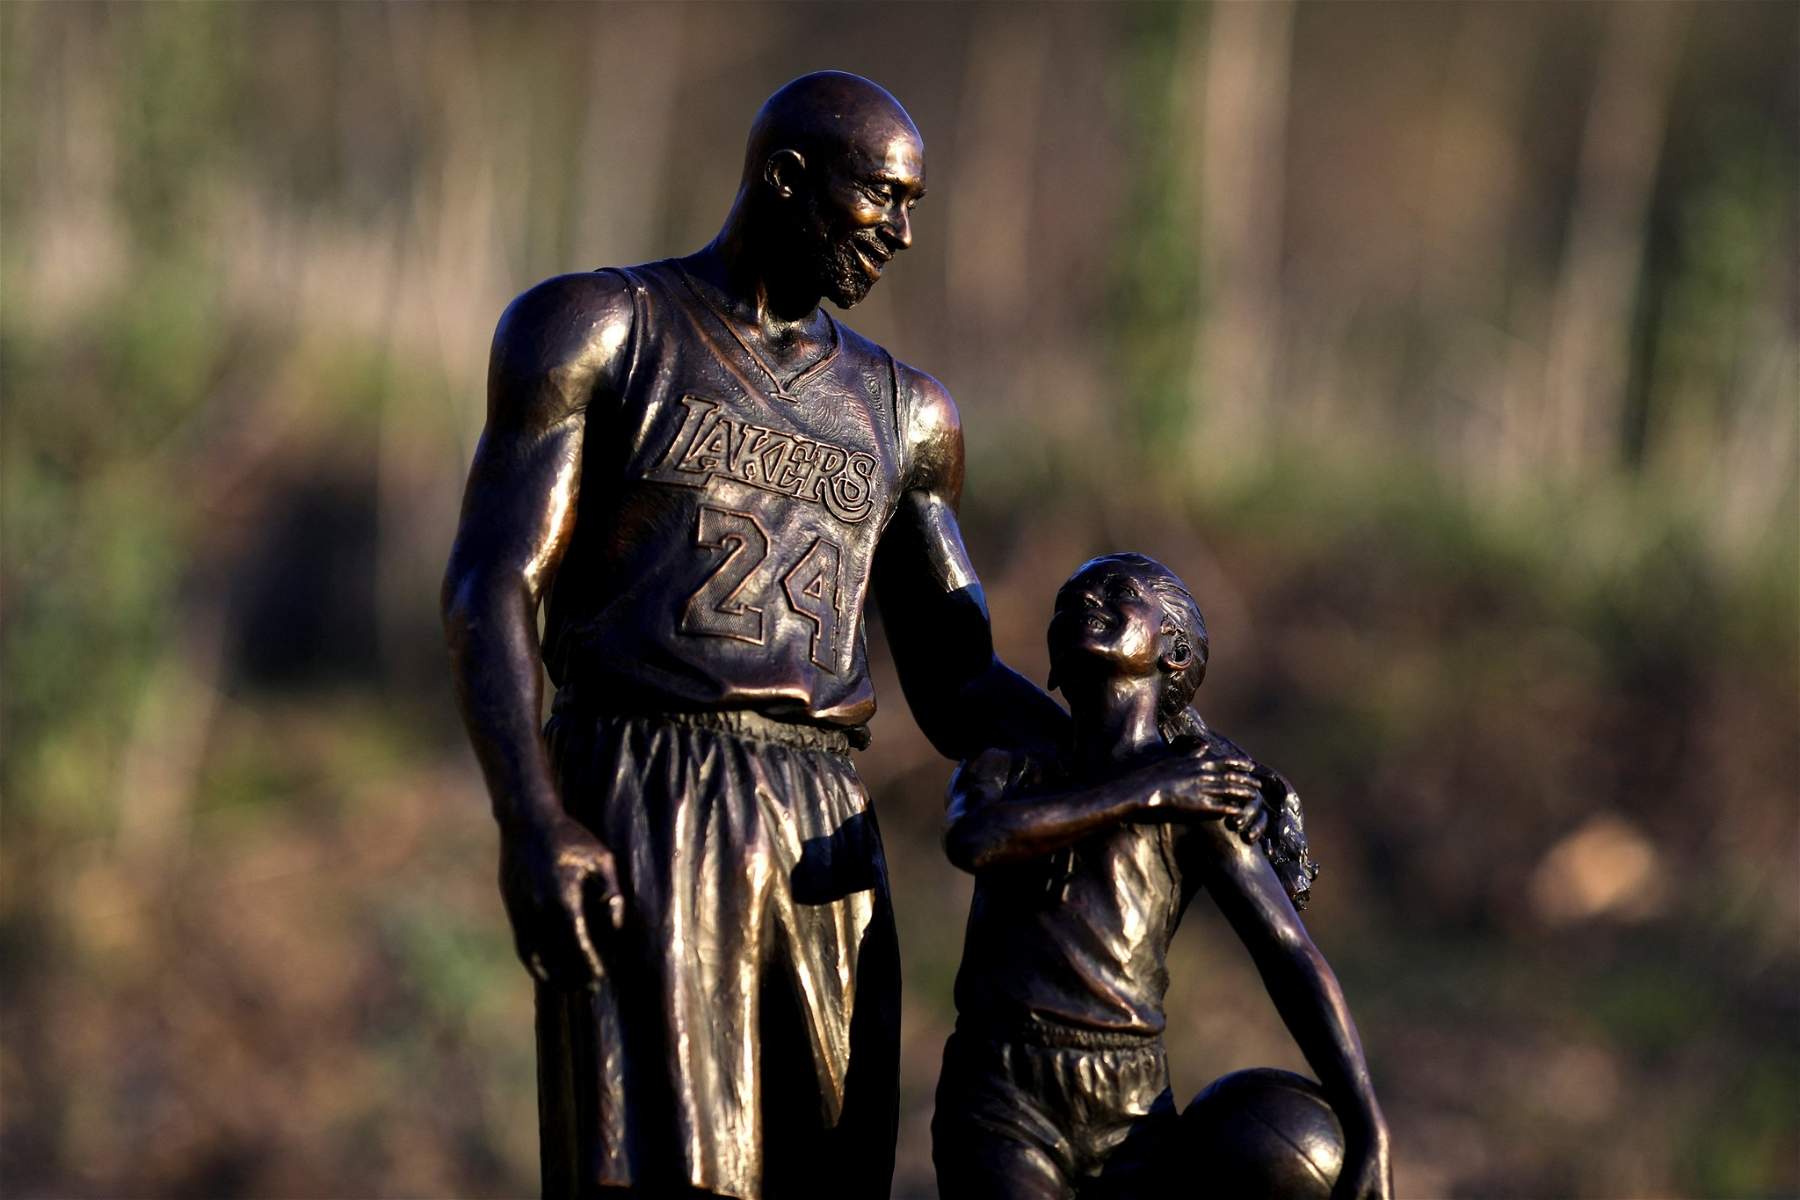 Los Angeles, installata una statua per Kobe Bryant nel luogo dove perse la vita